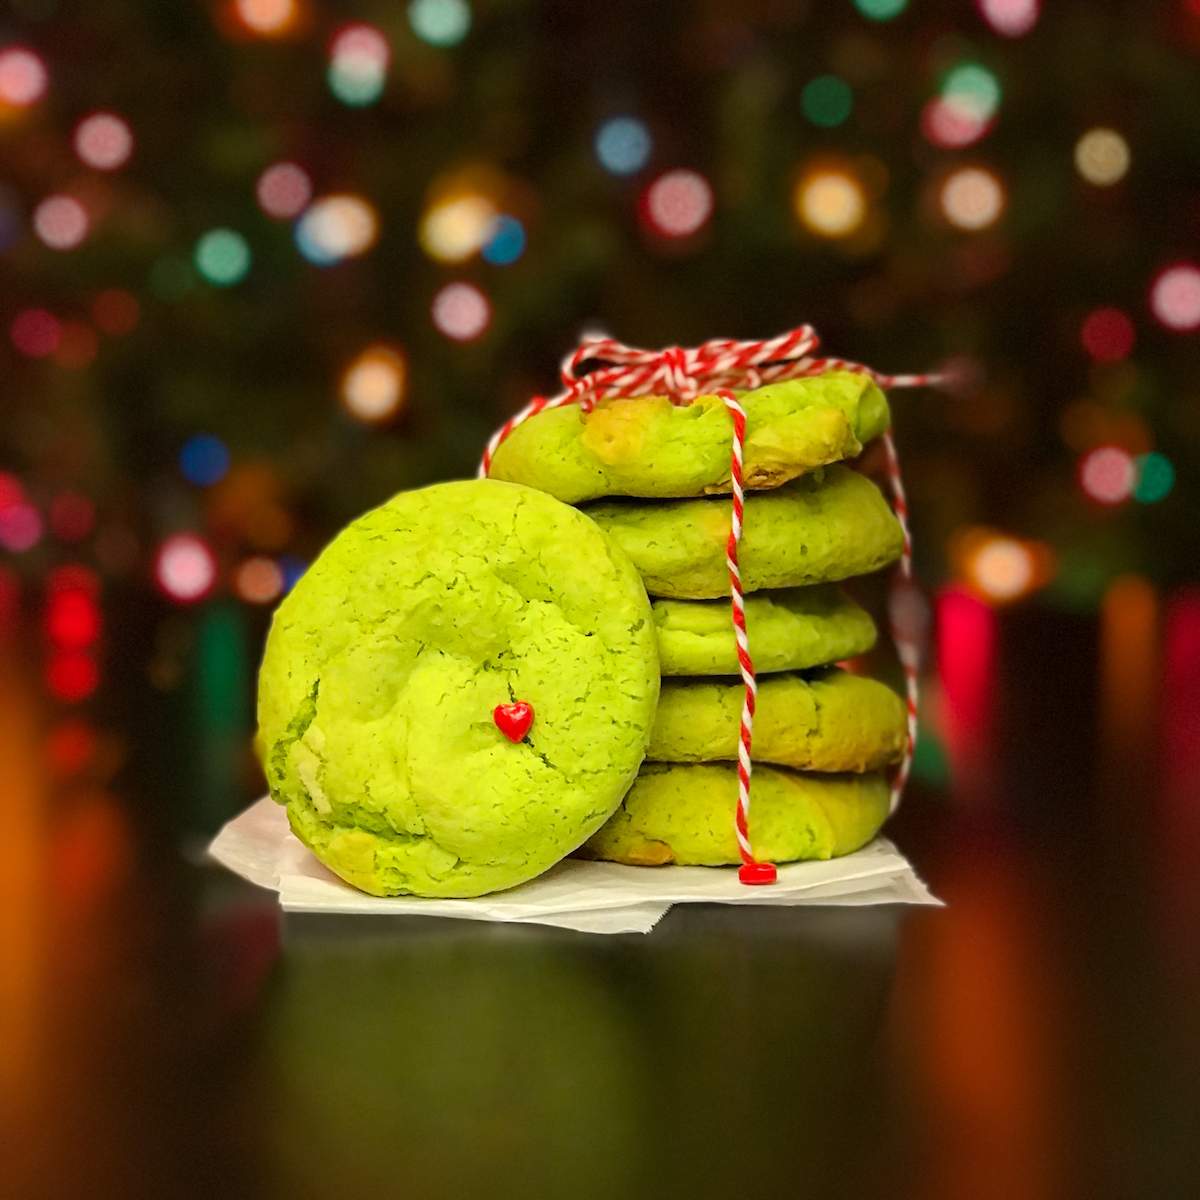 https://lovemischka.com/wp-content/uploads/2022/12/Ft-Grinch-Cookies.jpg